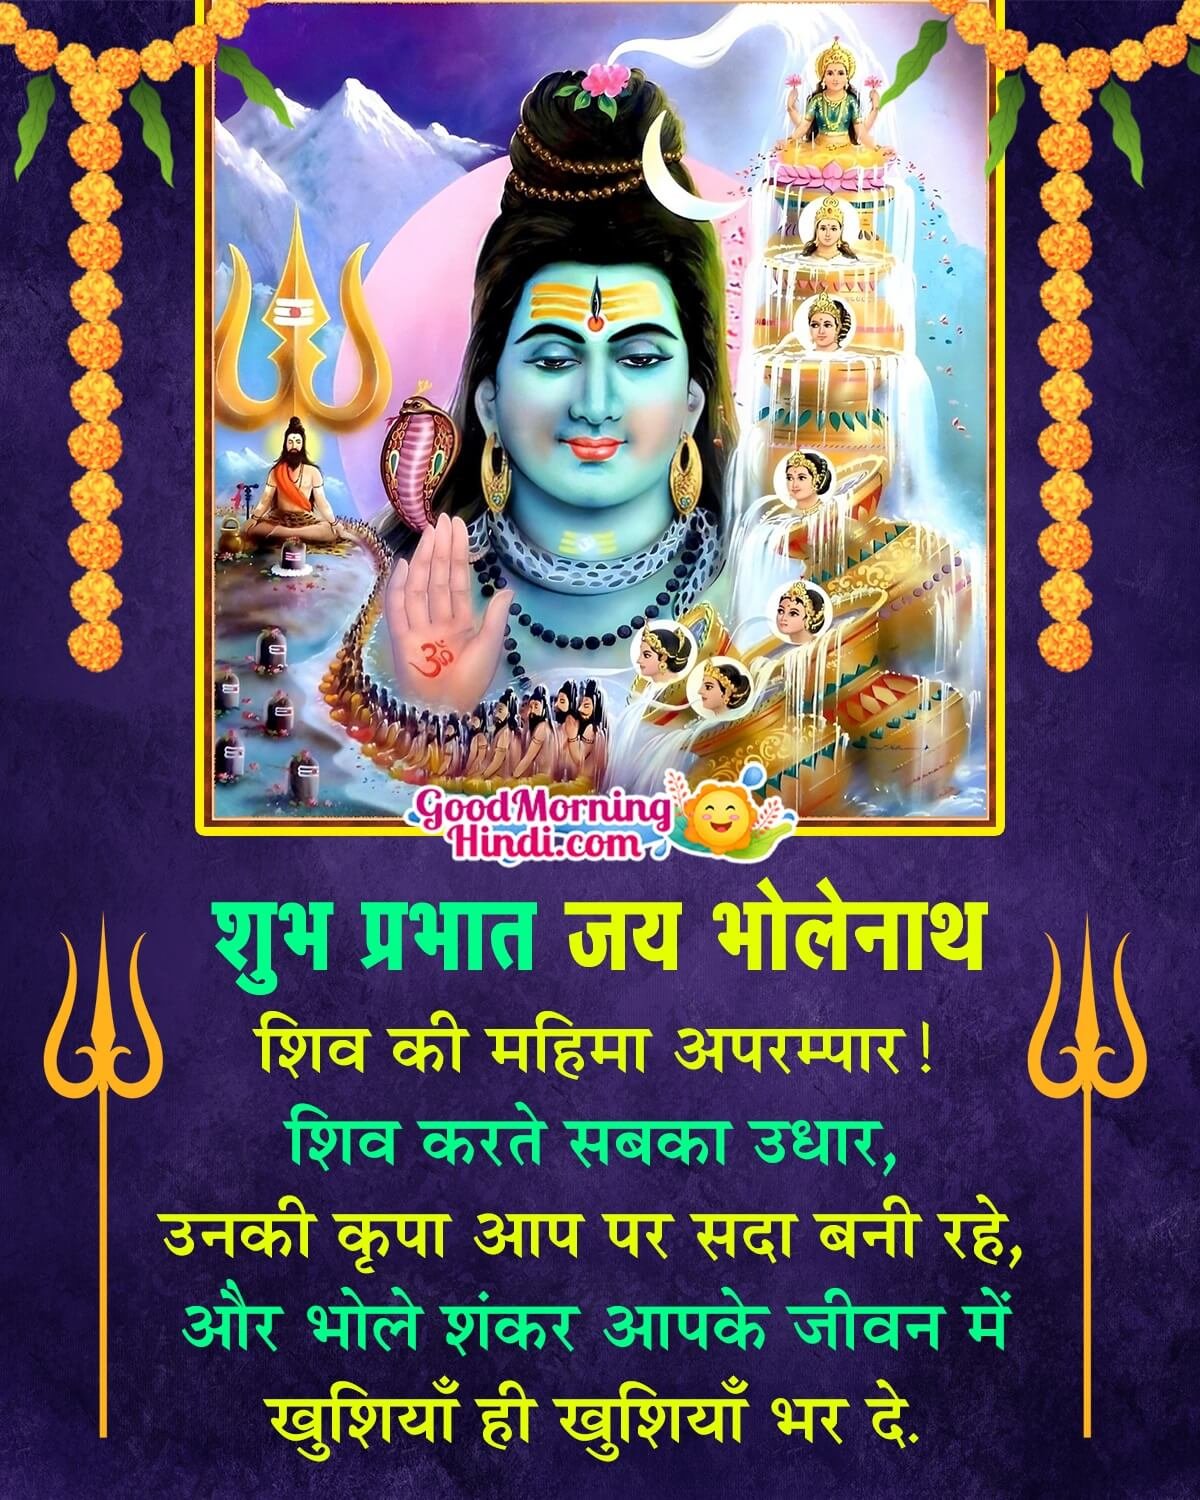 Good Morning Shiva Wish In Hindi